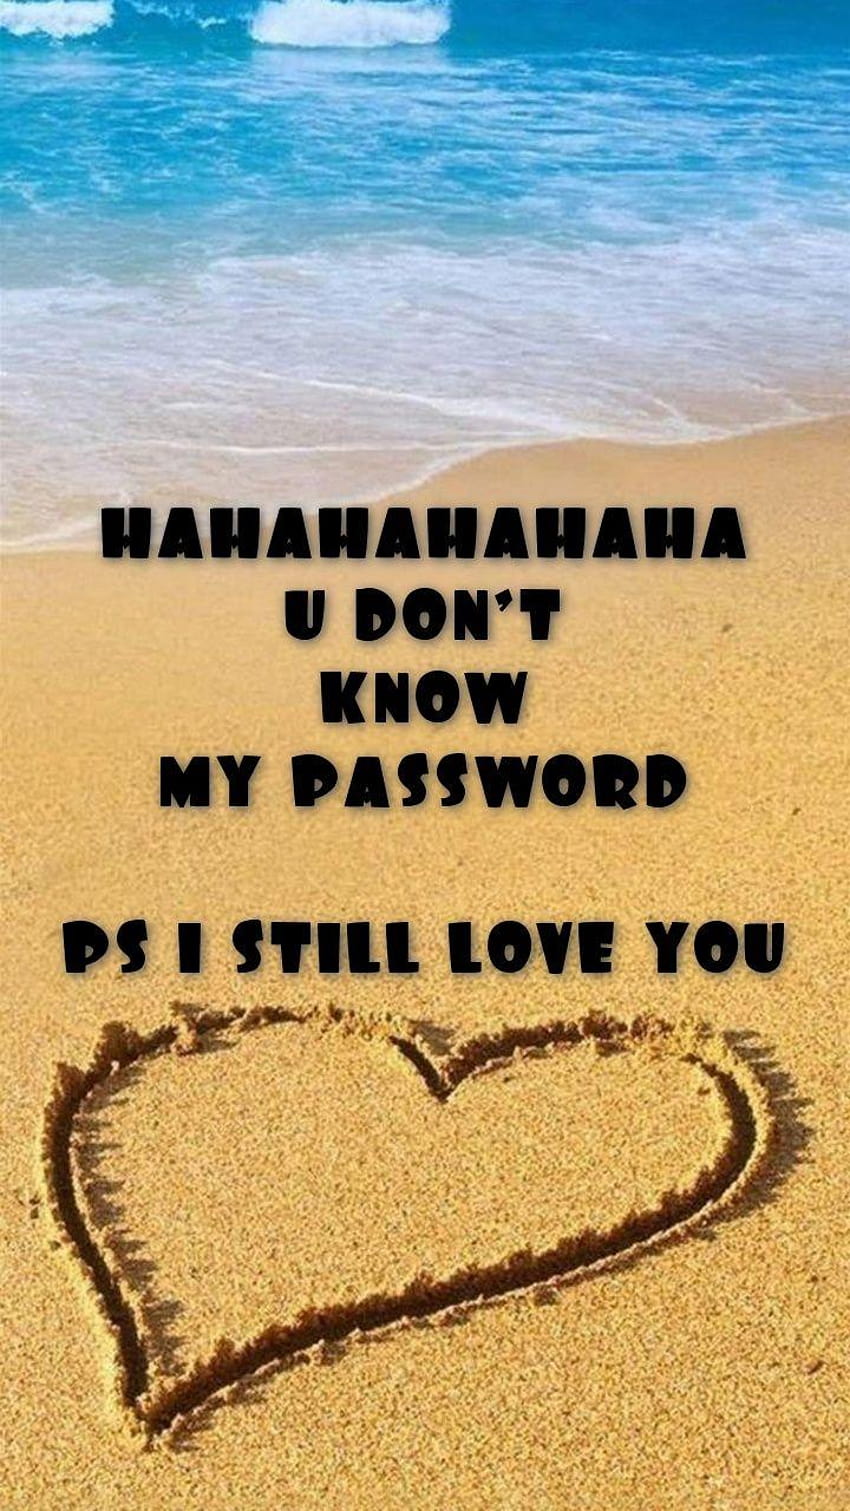 HAHAHAHAHAHA U DON'T KNOW MY PASSWORD PS I STILL LOVE YOU, you dont know my password HD phone wallpaper